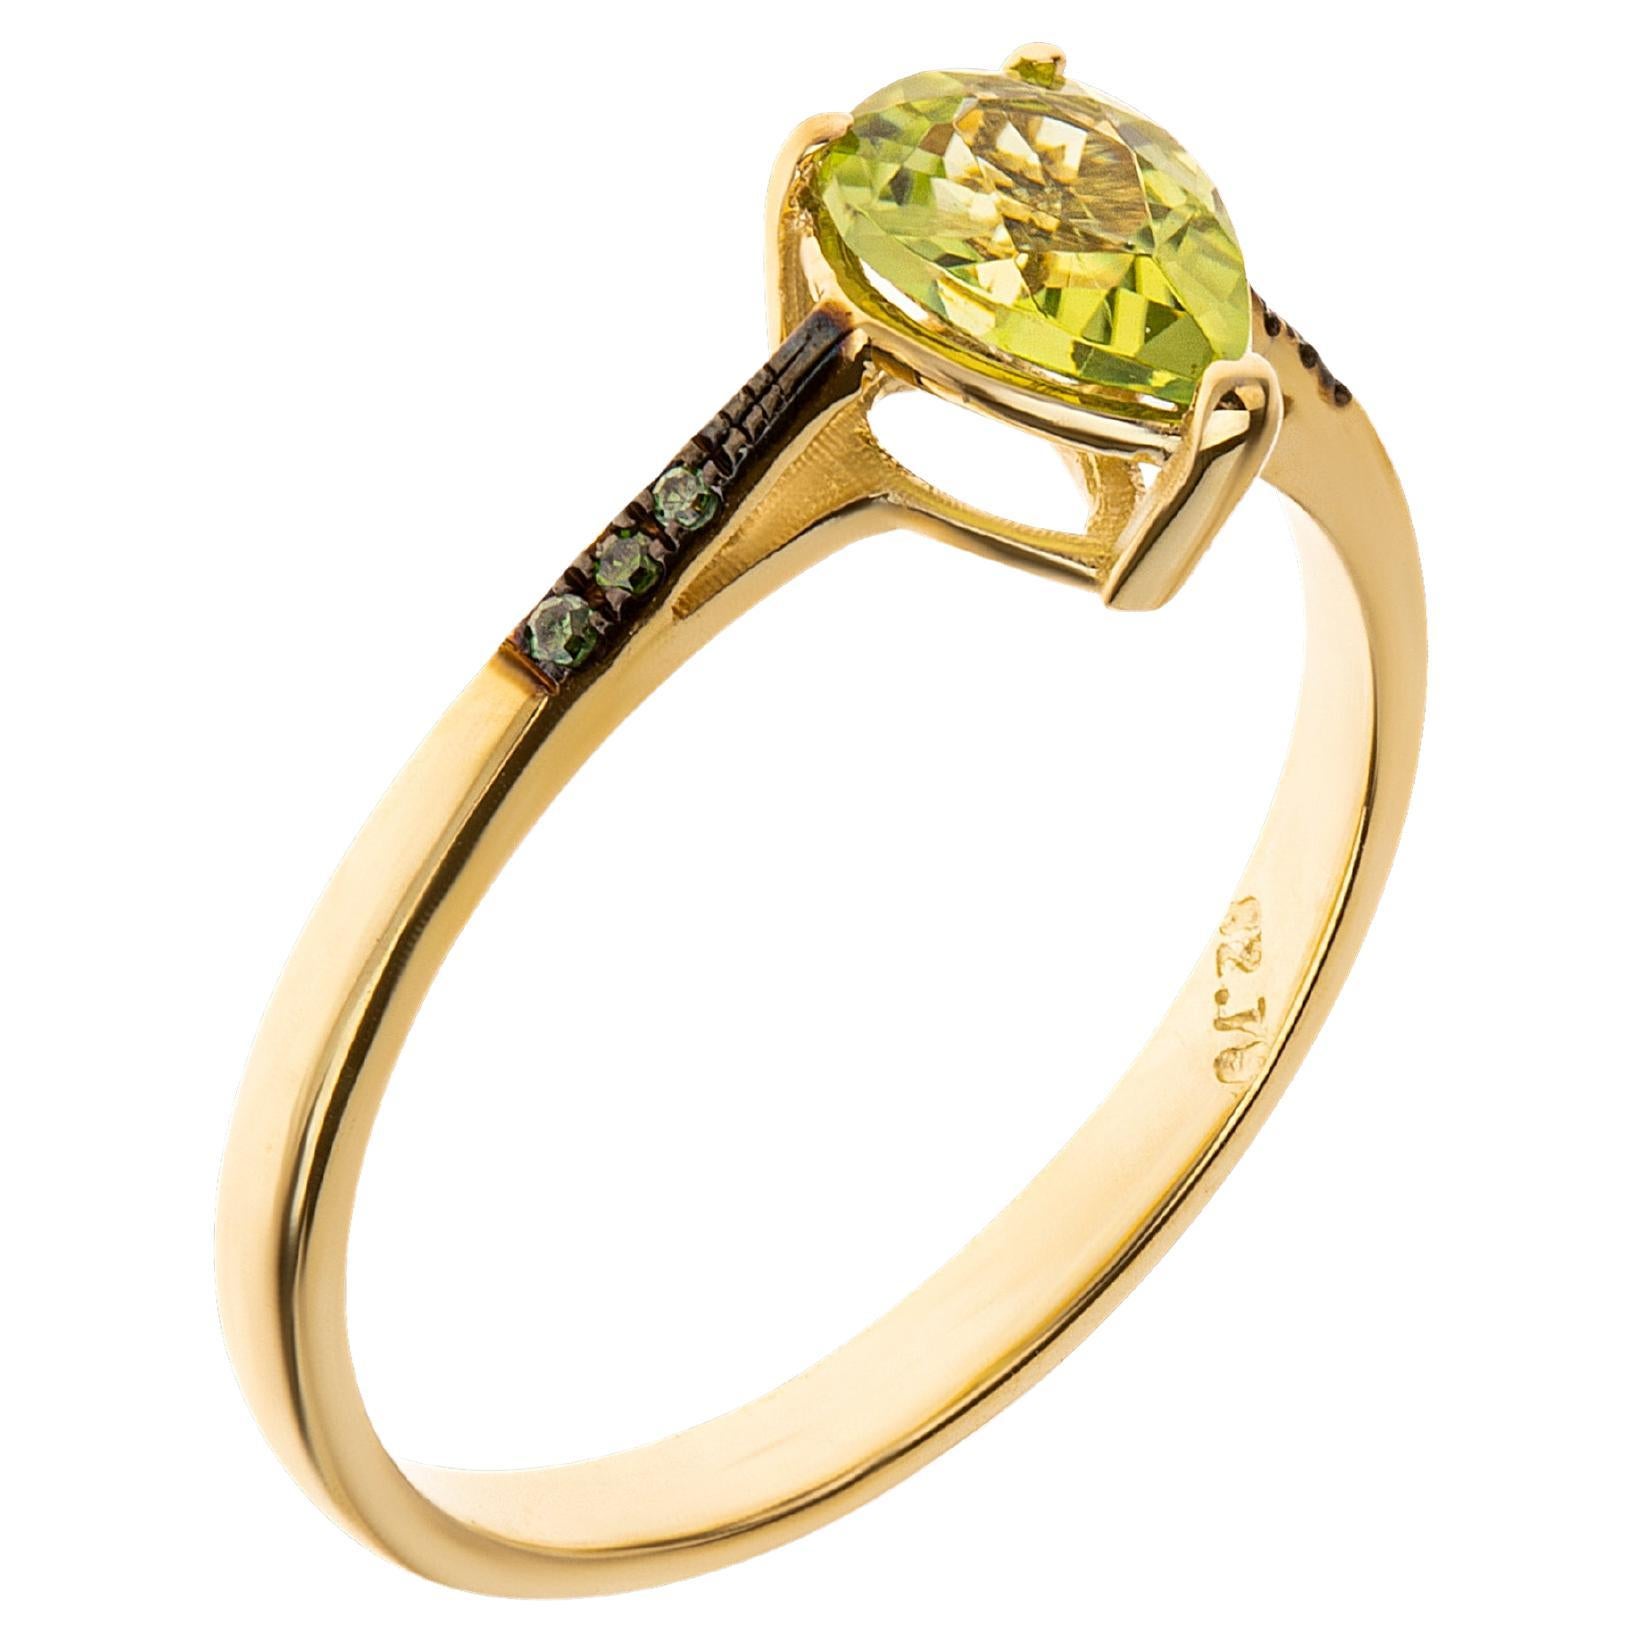 Bague en or 18 carats avec péridot taille poire et diamants verts taille brillant sertis en pavé